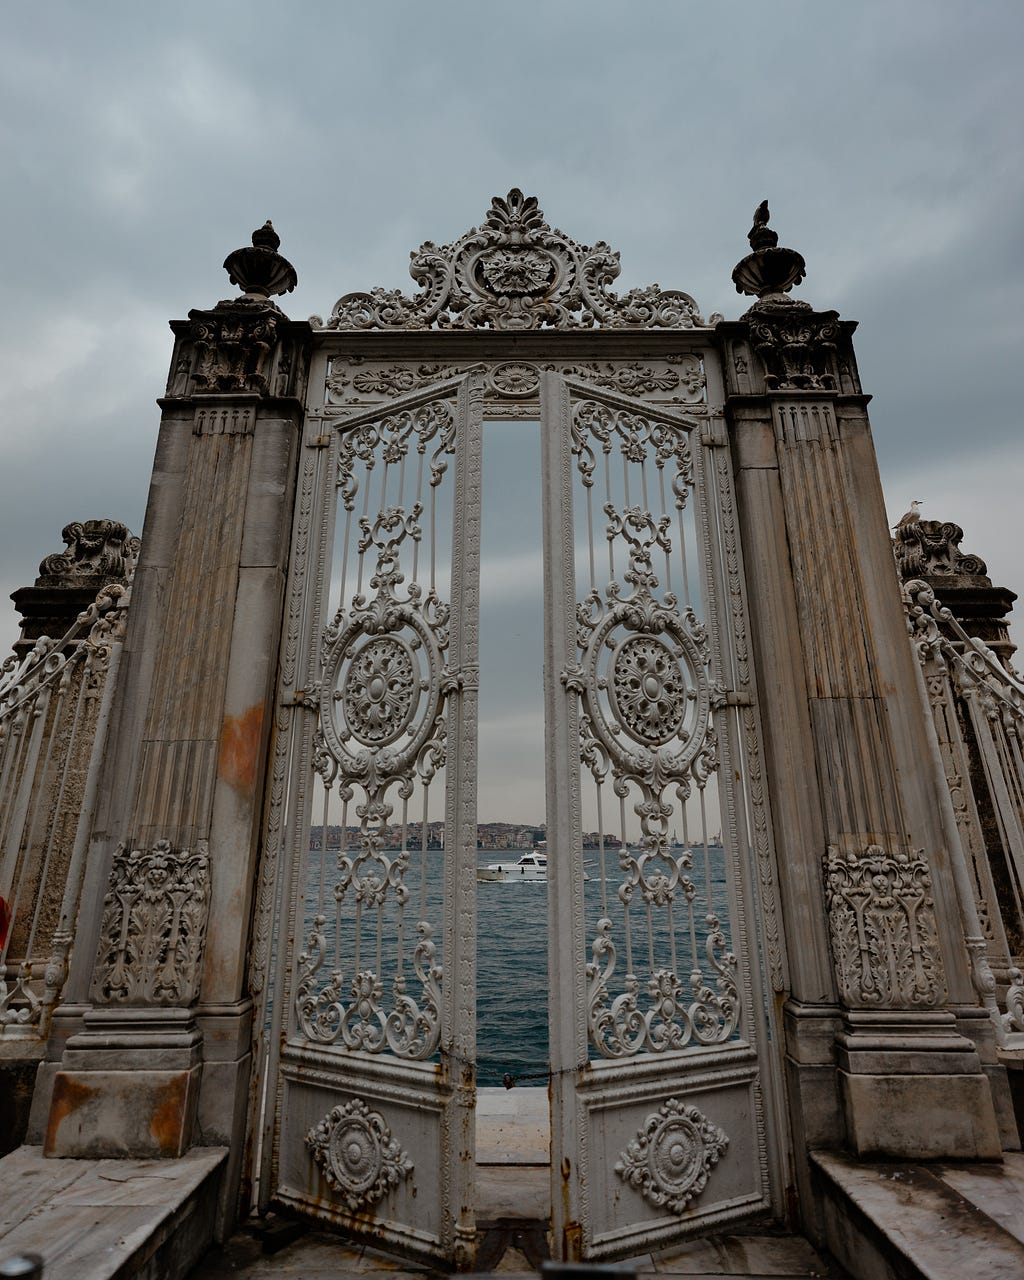 A very ornate gate